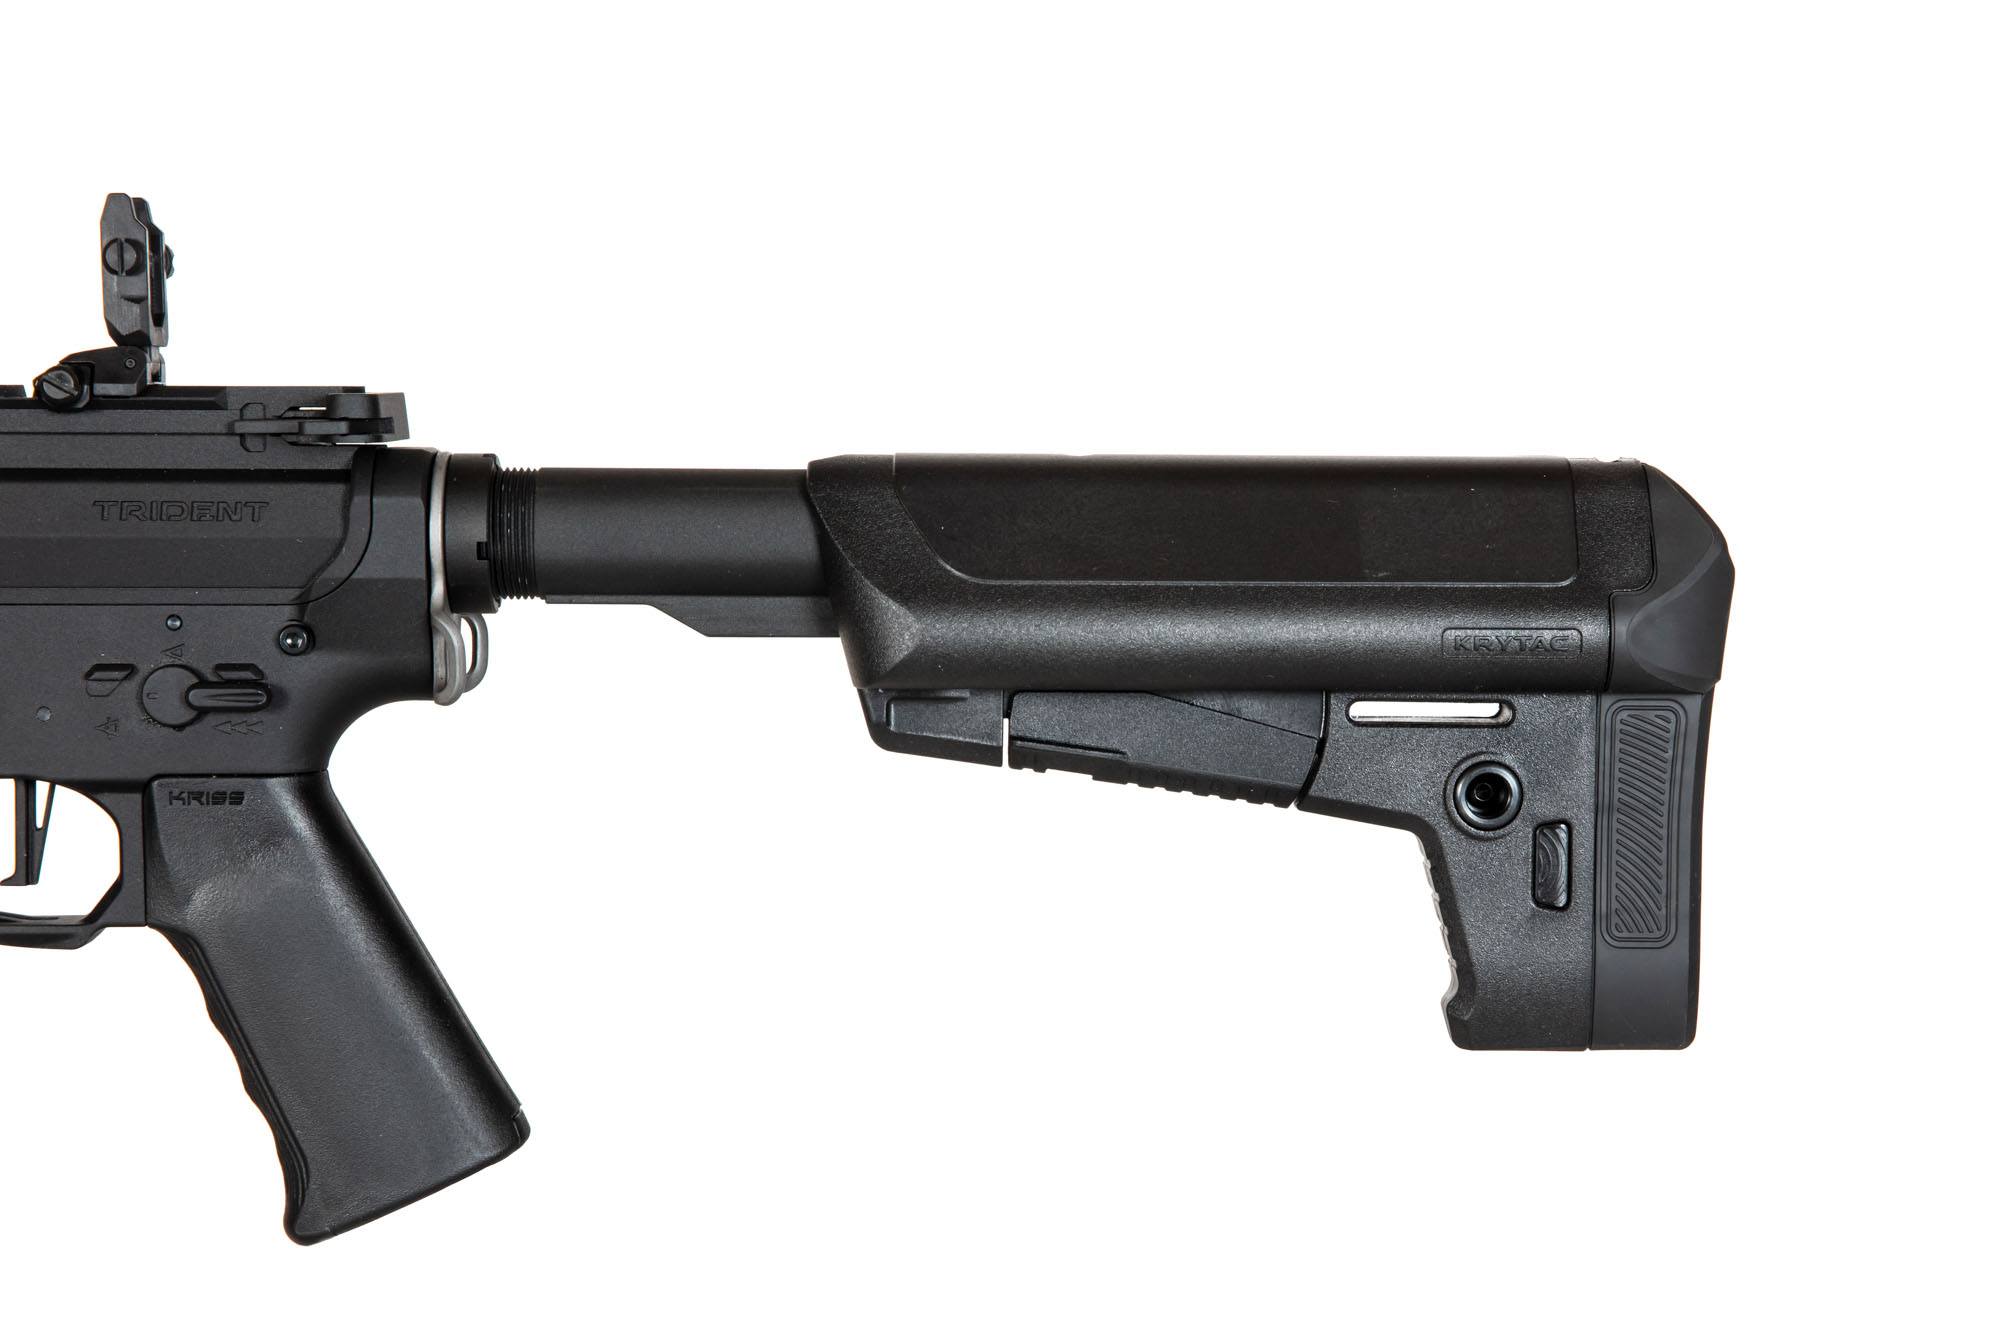 Trident Mk2 CRB-M Carbine replica